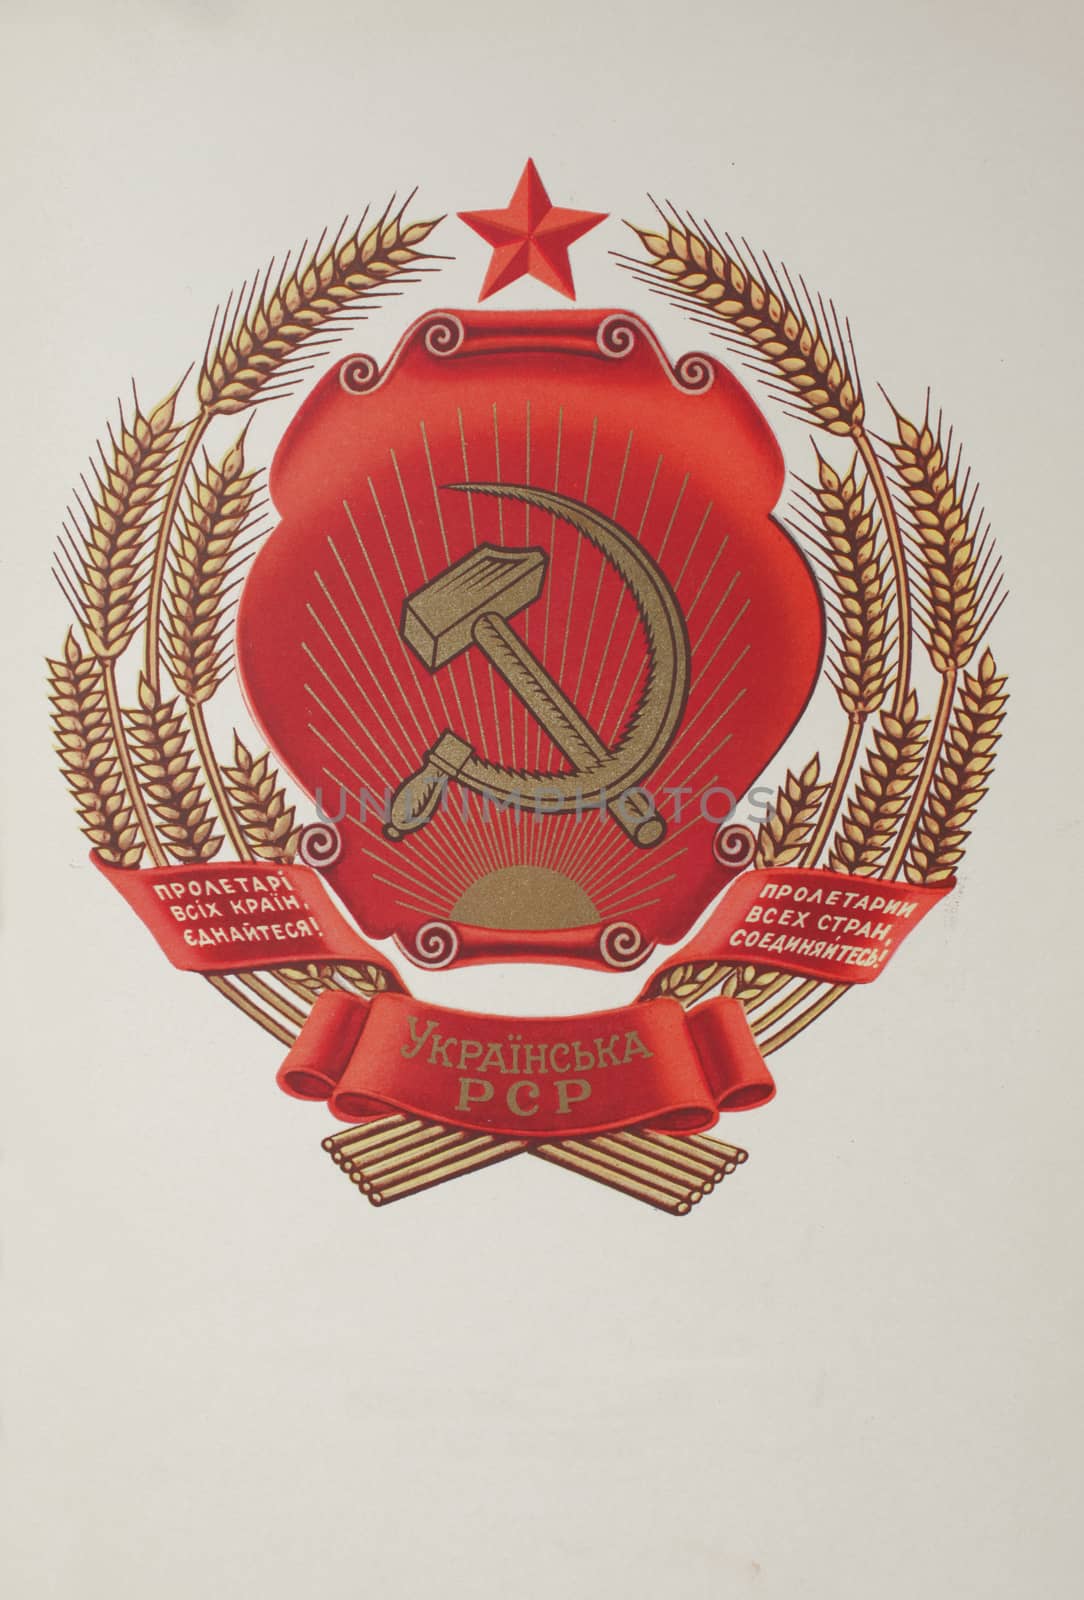 Coat of arms Ukrainian Soviet Socialist Republic under USSR